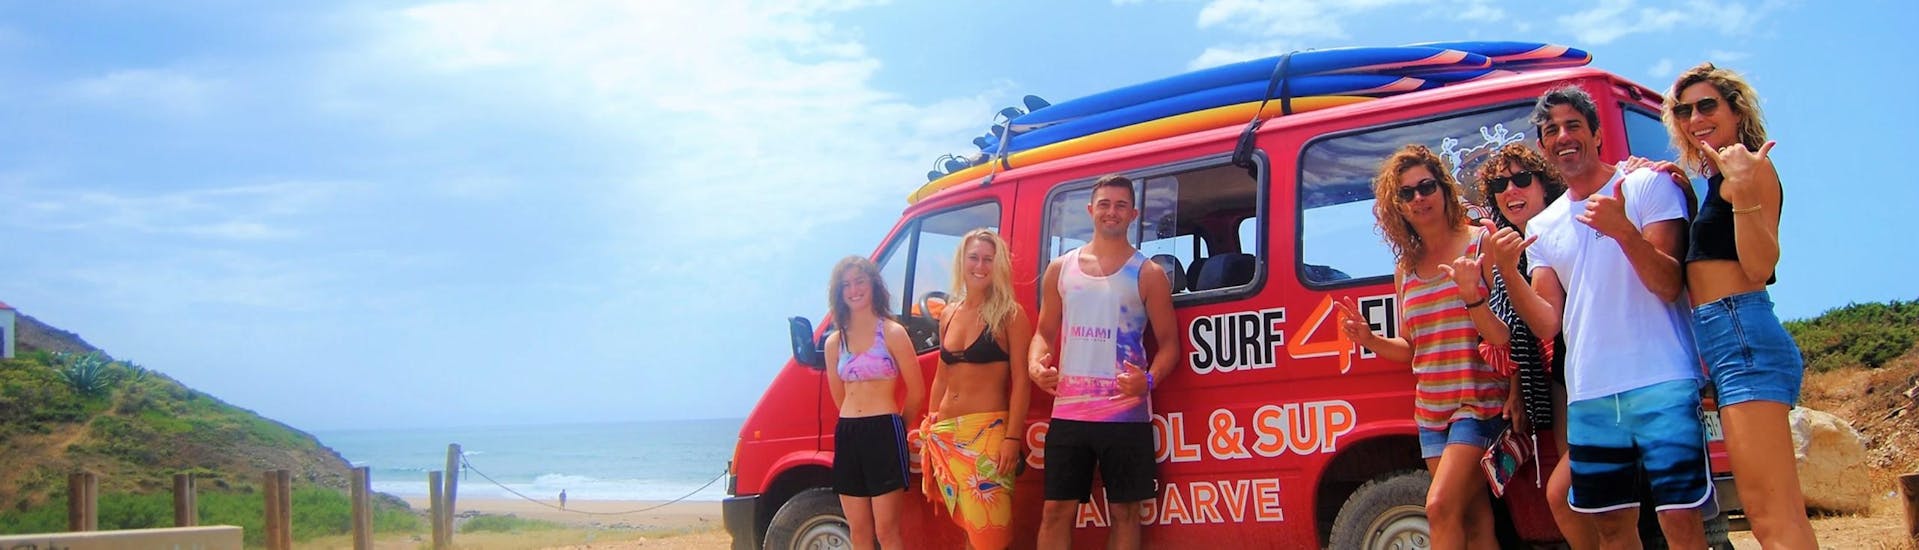 Un gruppo di persone sorride davanti al furgone di Surf4Fun Albufeira, una scuola di surf e sup di Albufeira.